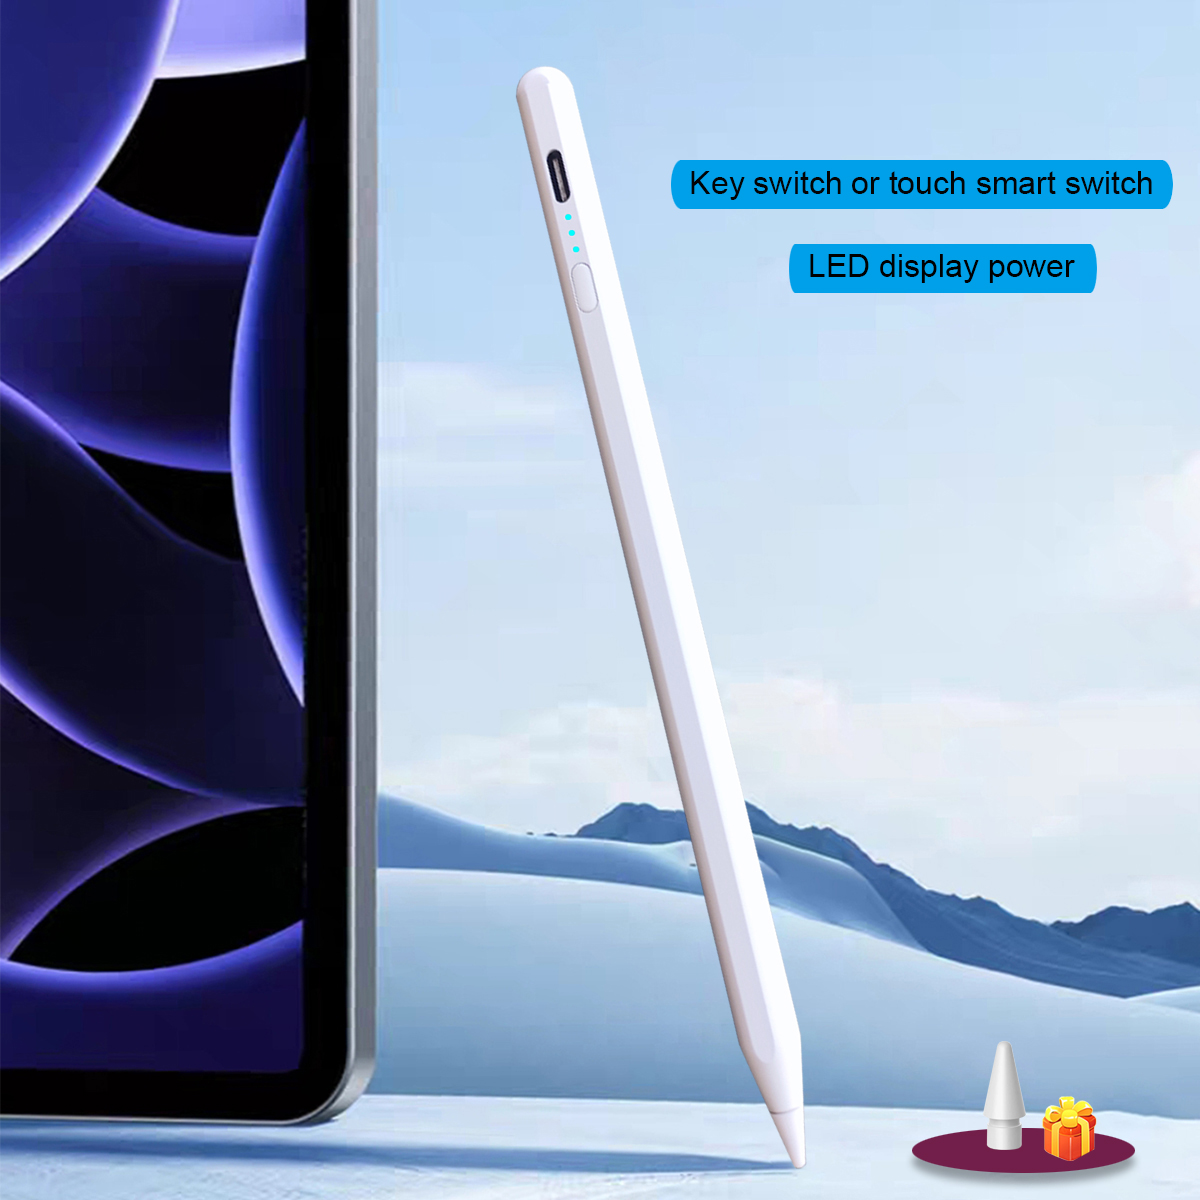 Для Apple iPad Pencil 2 Стилус Touch Pen Карандаши iPad Pro 7-го, 8-го, 9-го поколения mini 5 6 Air 3 4 5 10,9 Palm Rejection